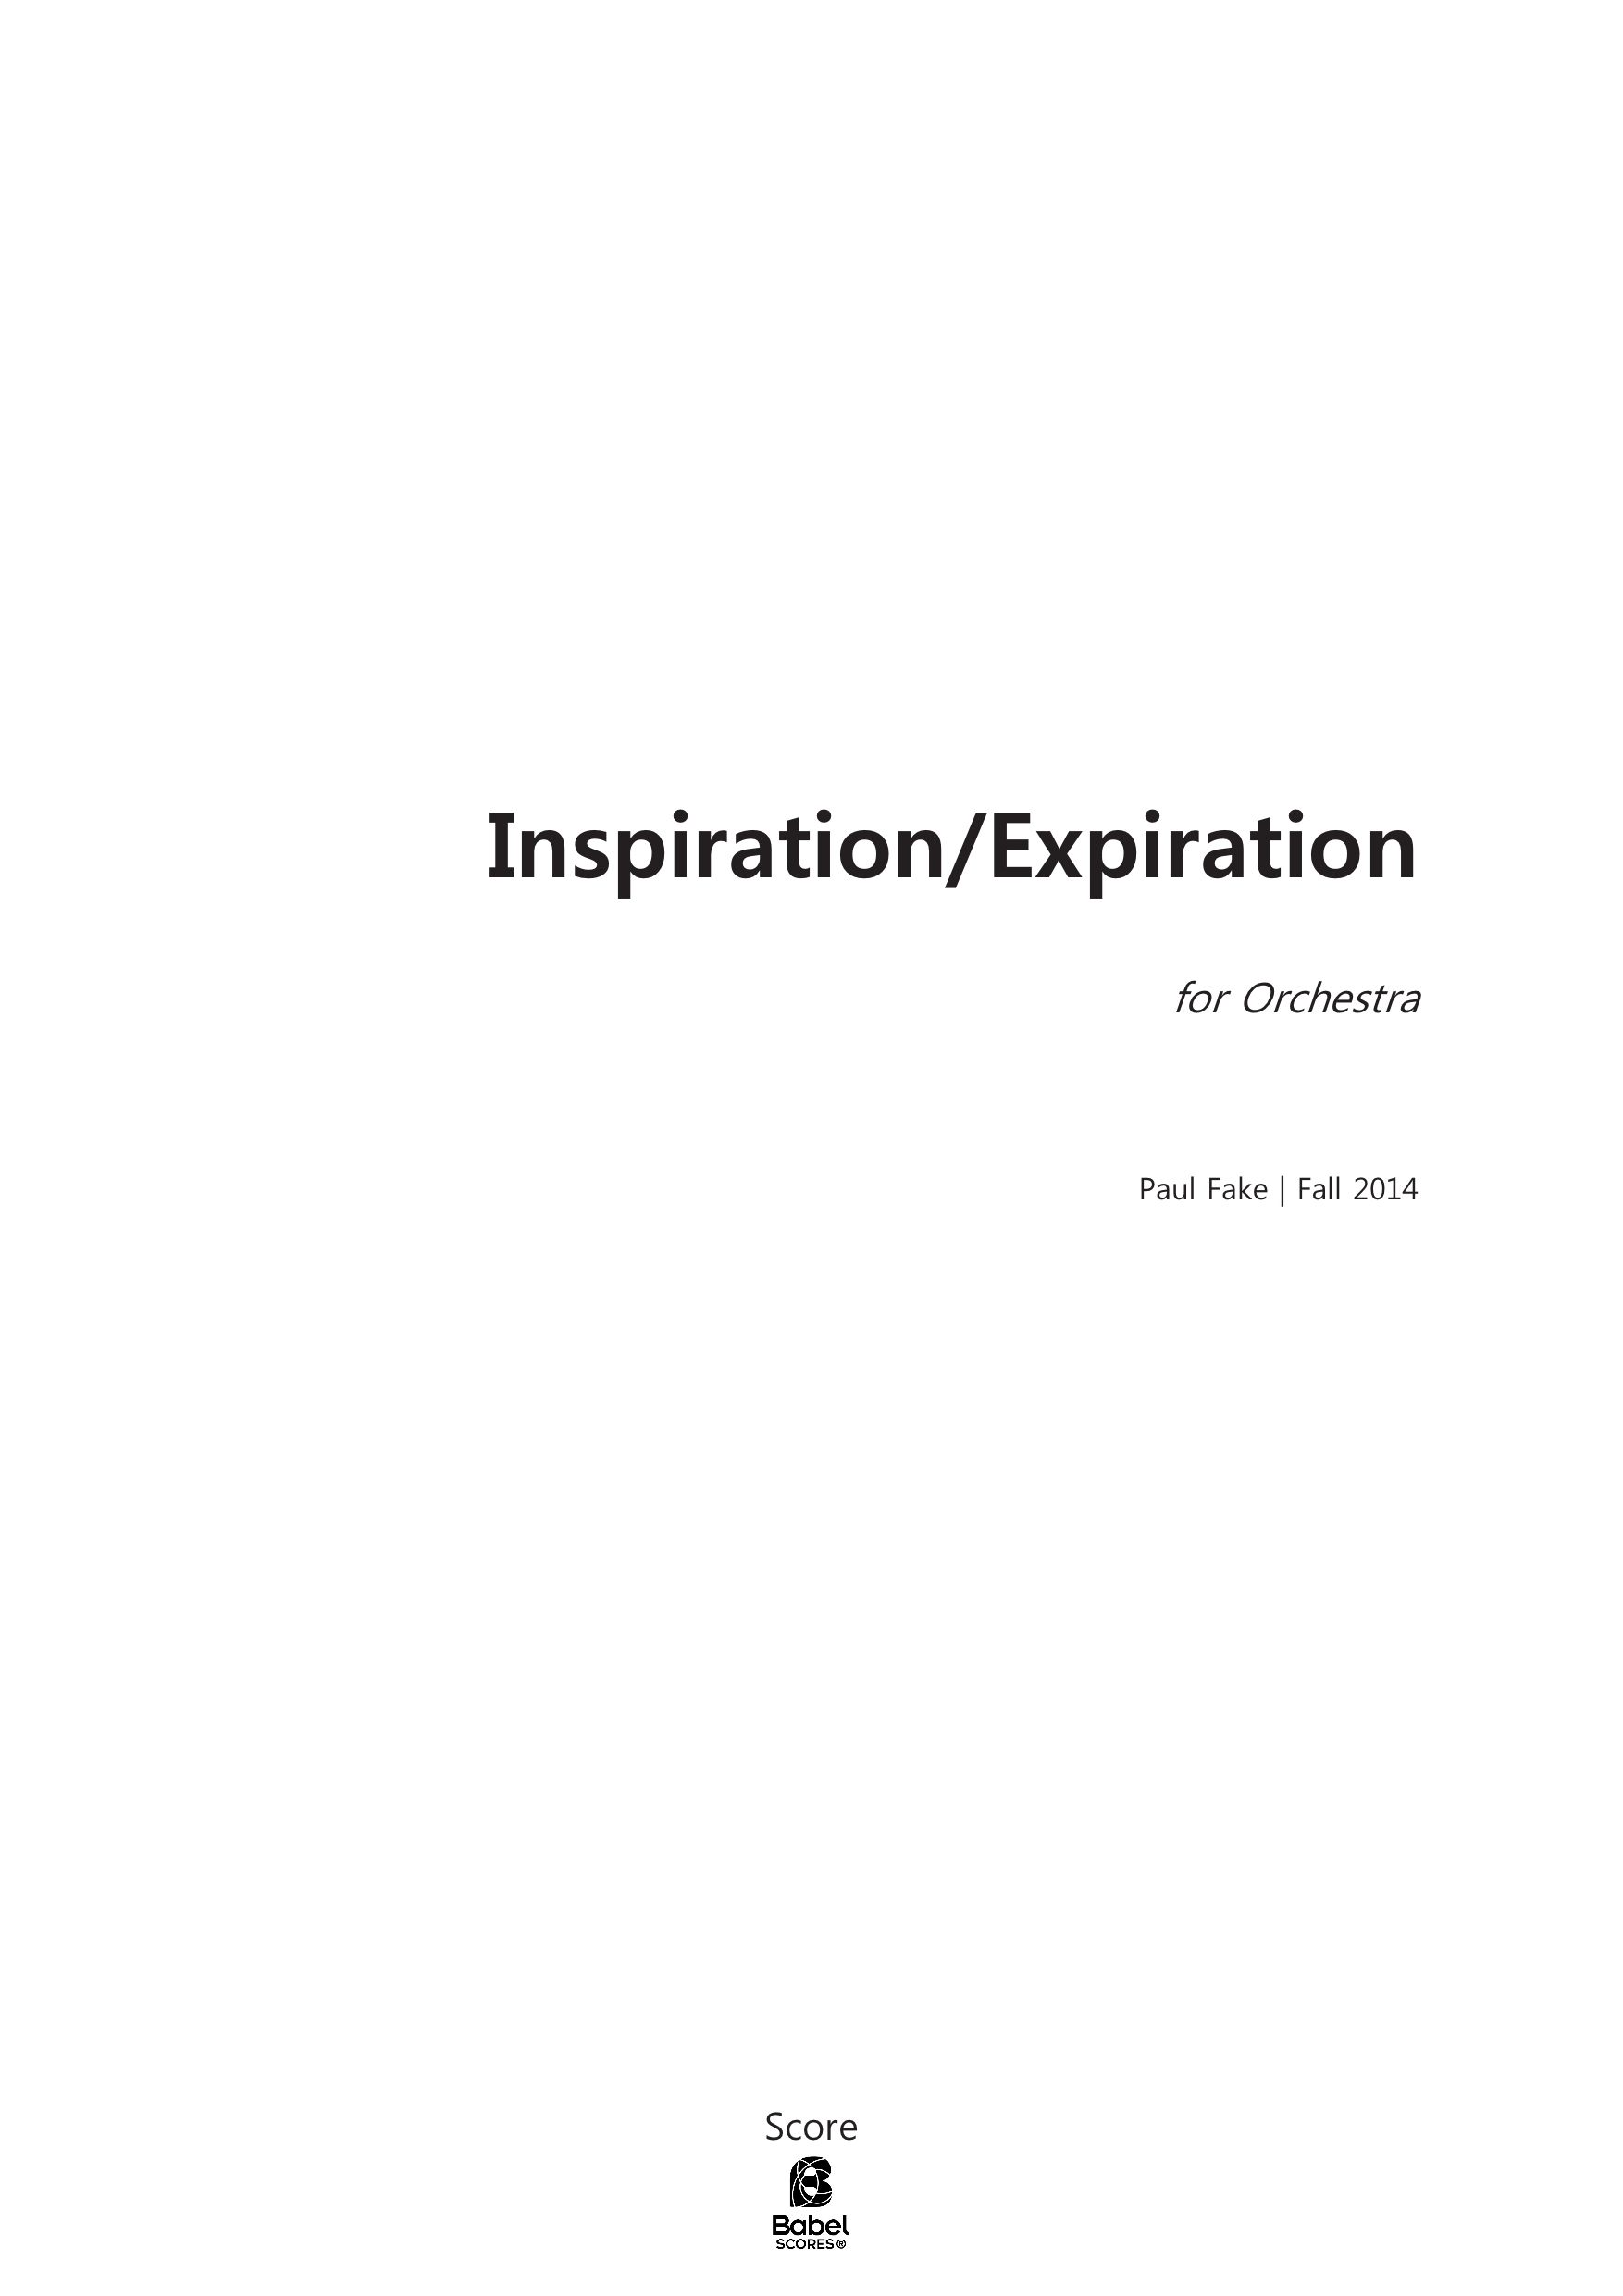 Inspiration Expiration A3 z 2 1 377